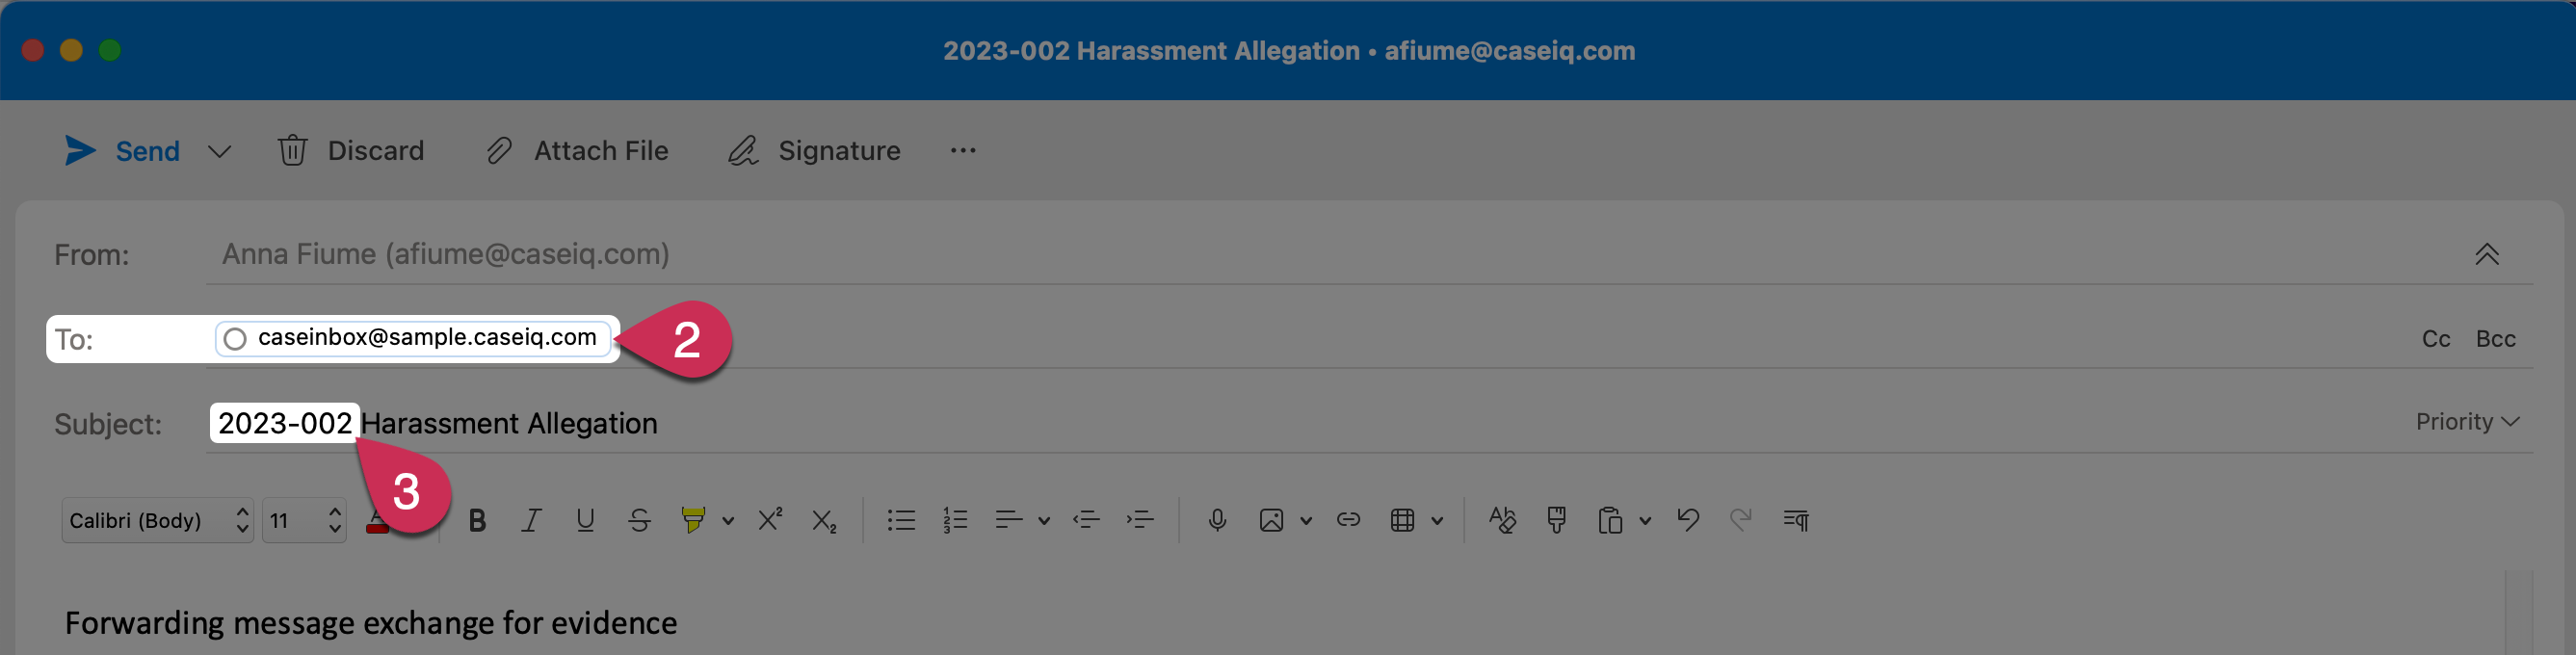 Un brouillon d’e-mail dans Outlook. Le destinataire est « caseinbox@sample.caseiq.com » et la ligne d'objet se lit comme suit : « 2023-002 Allégation de harcèlement ».